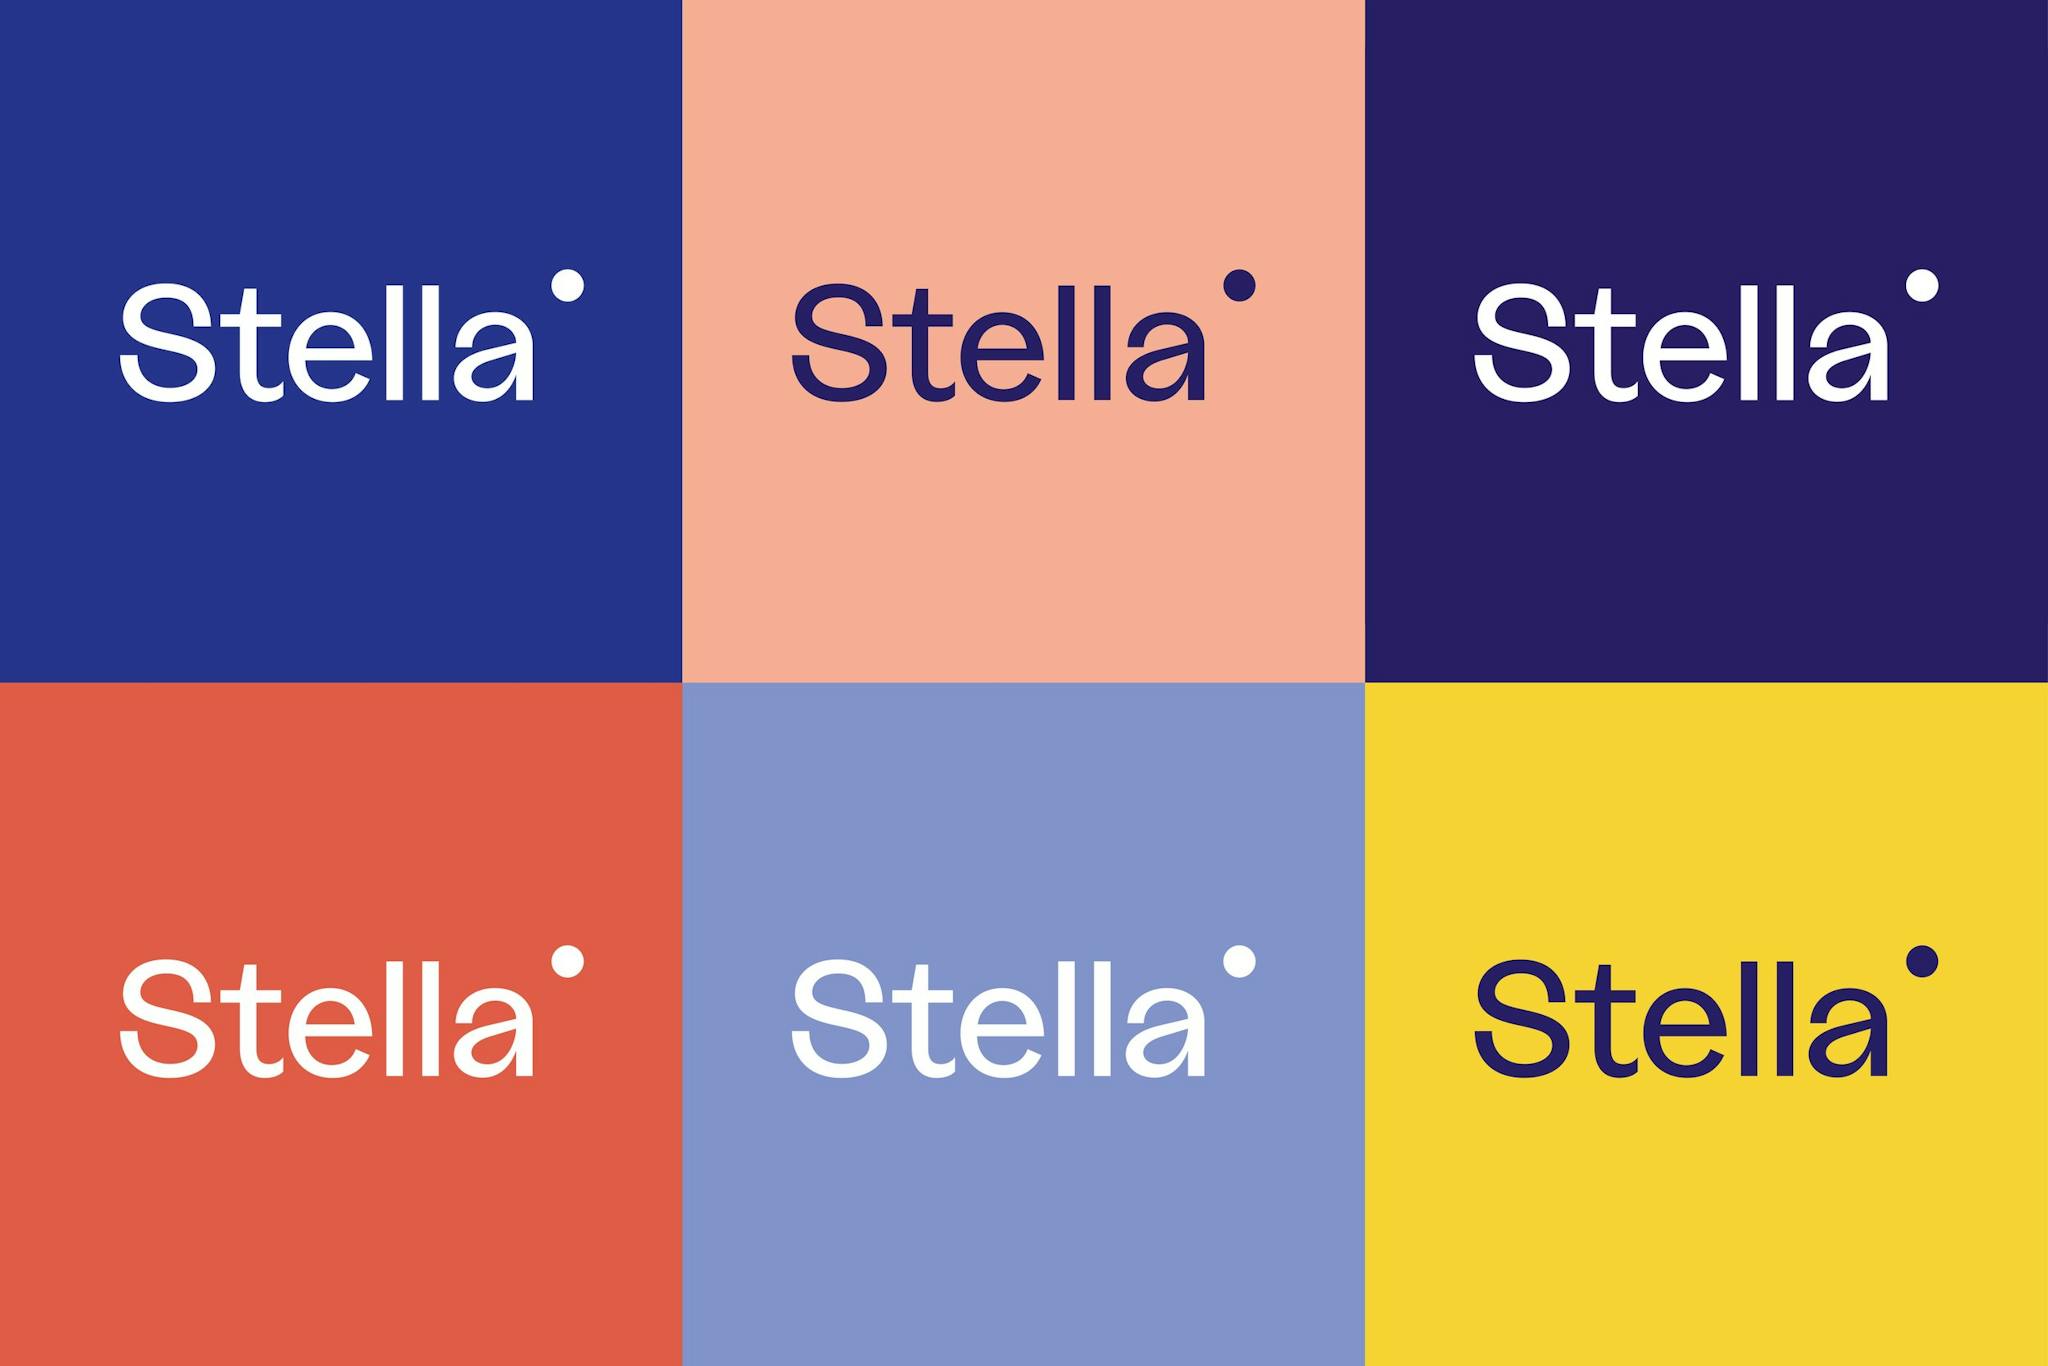 Stella Vorarlberg, Zeughaus Design © Zeughaus Design